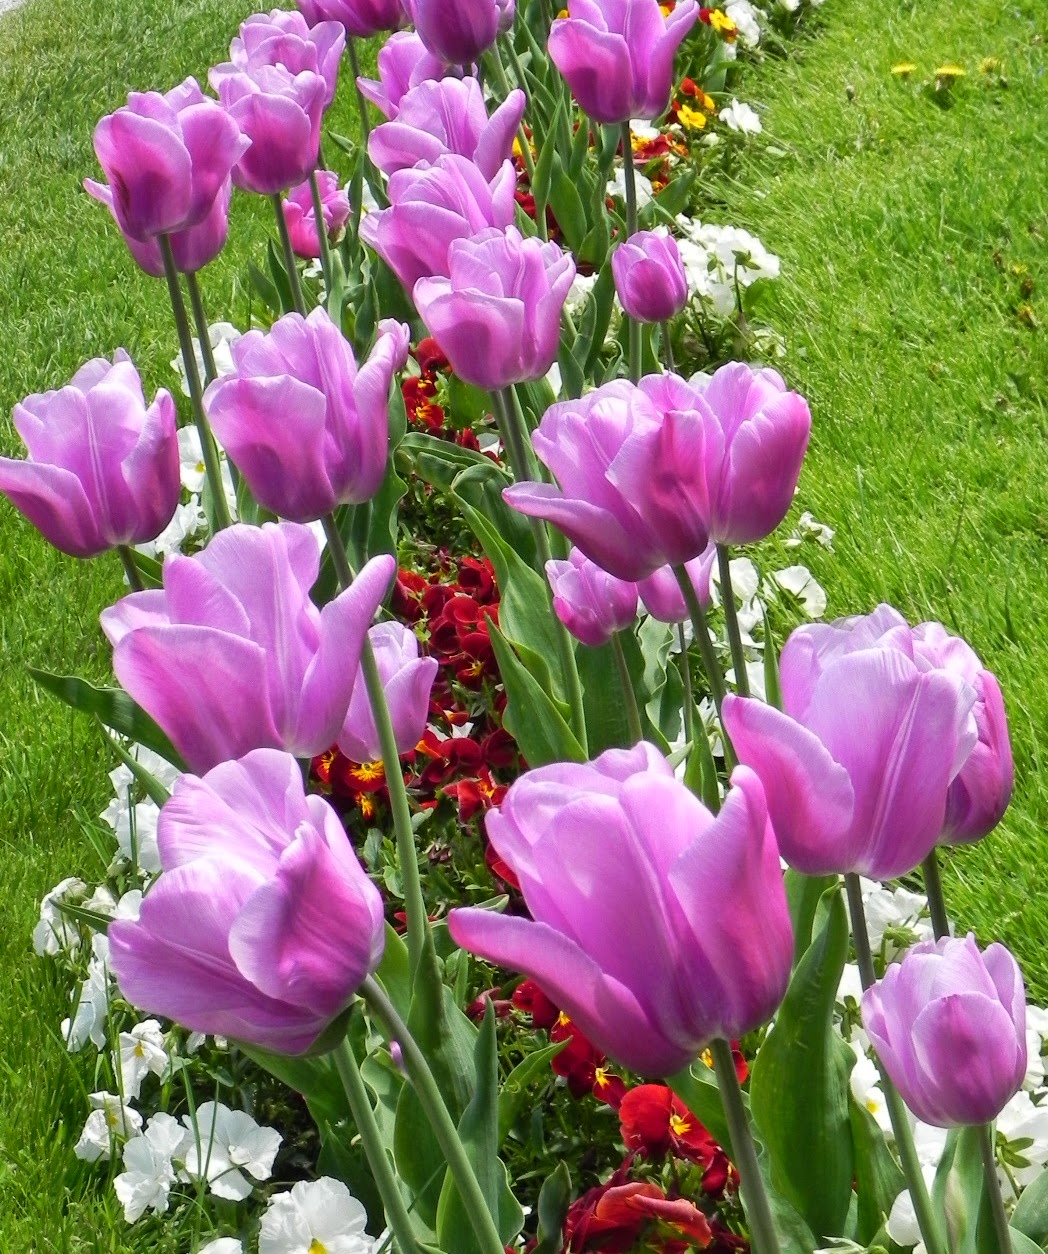 Seindah Tulips....